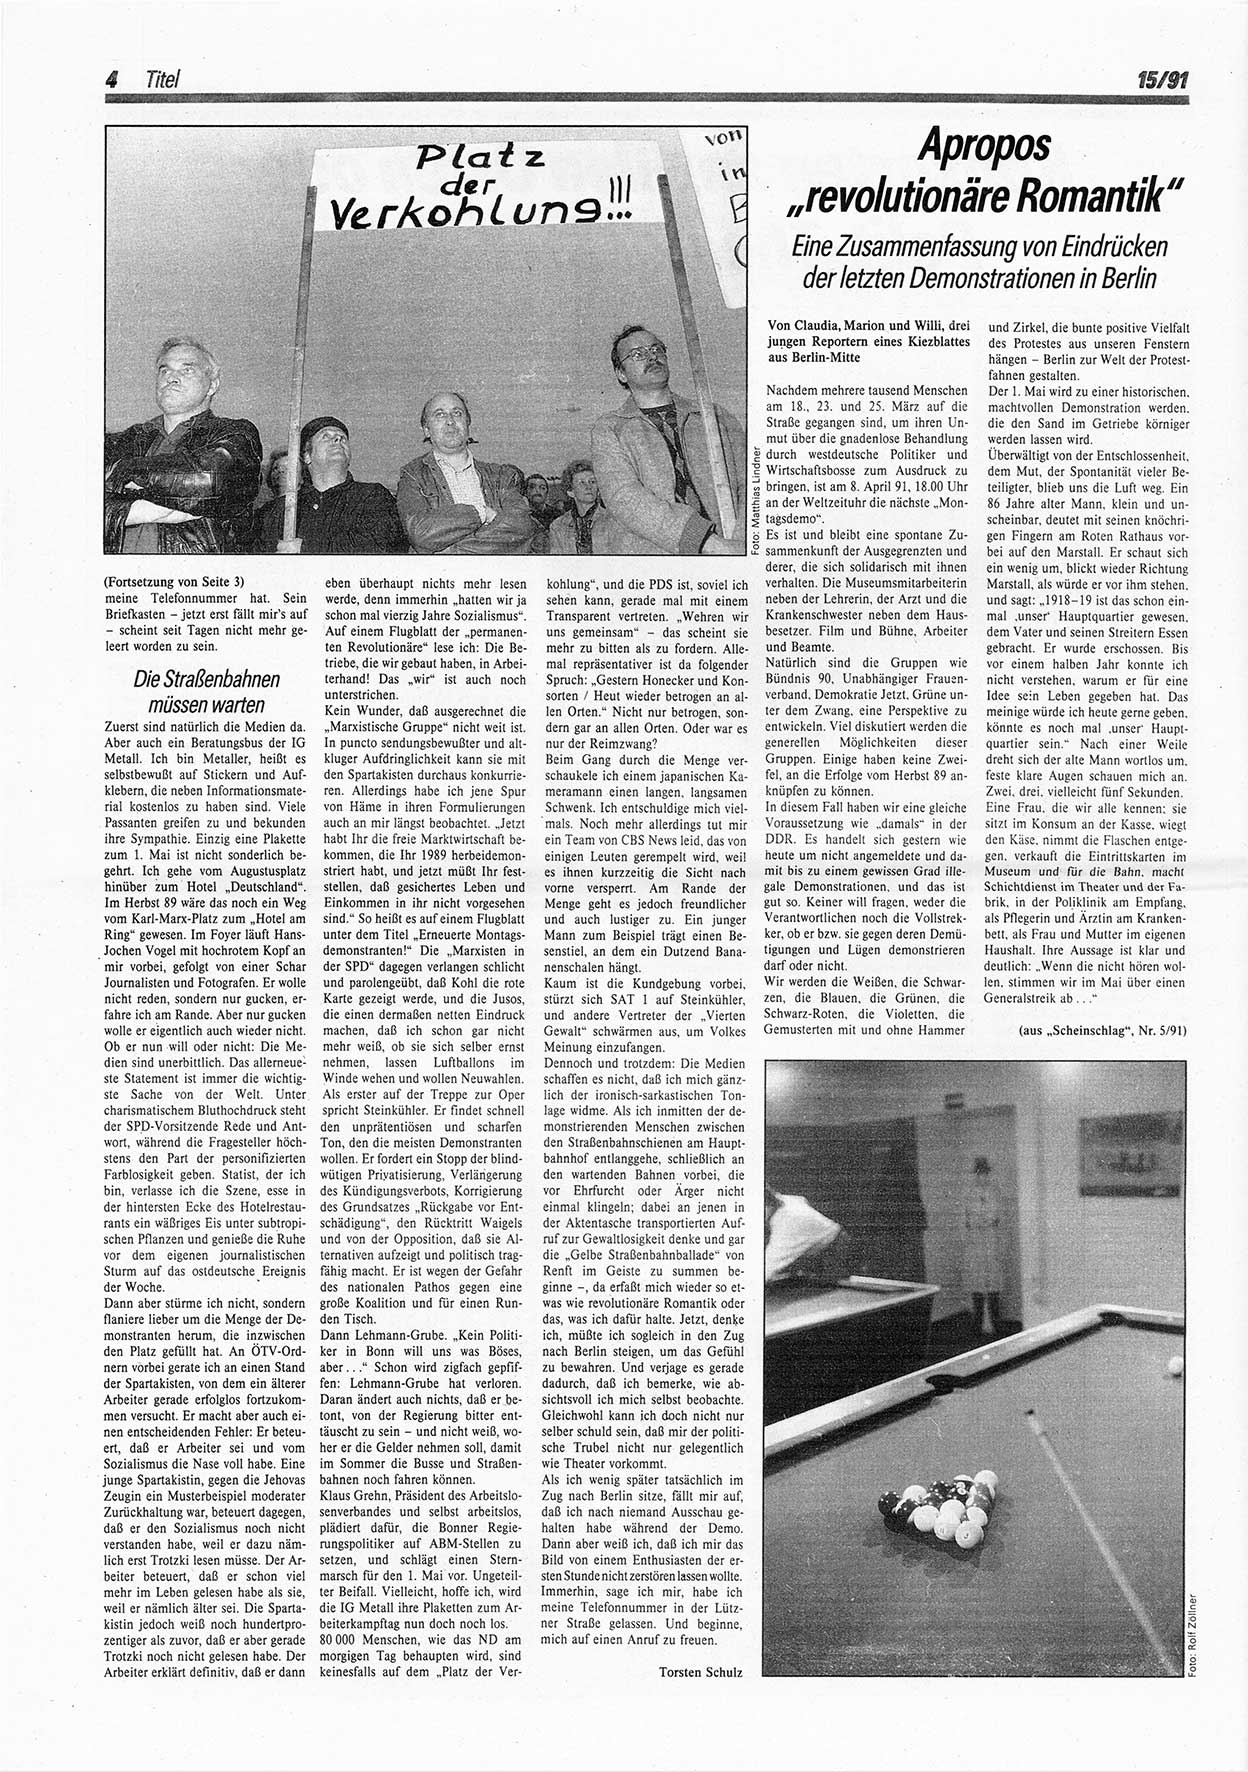 Die Andere, Unabhängige Wochenzeitung für Politik, Kultur und Kunst, Ausgabe 15 vom 10.4.1991, Seite 4 (And. W.-Zg. Ausg. 15 1991, S. 4)